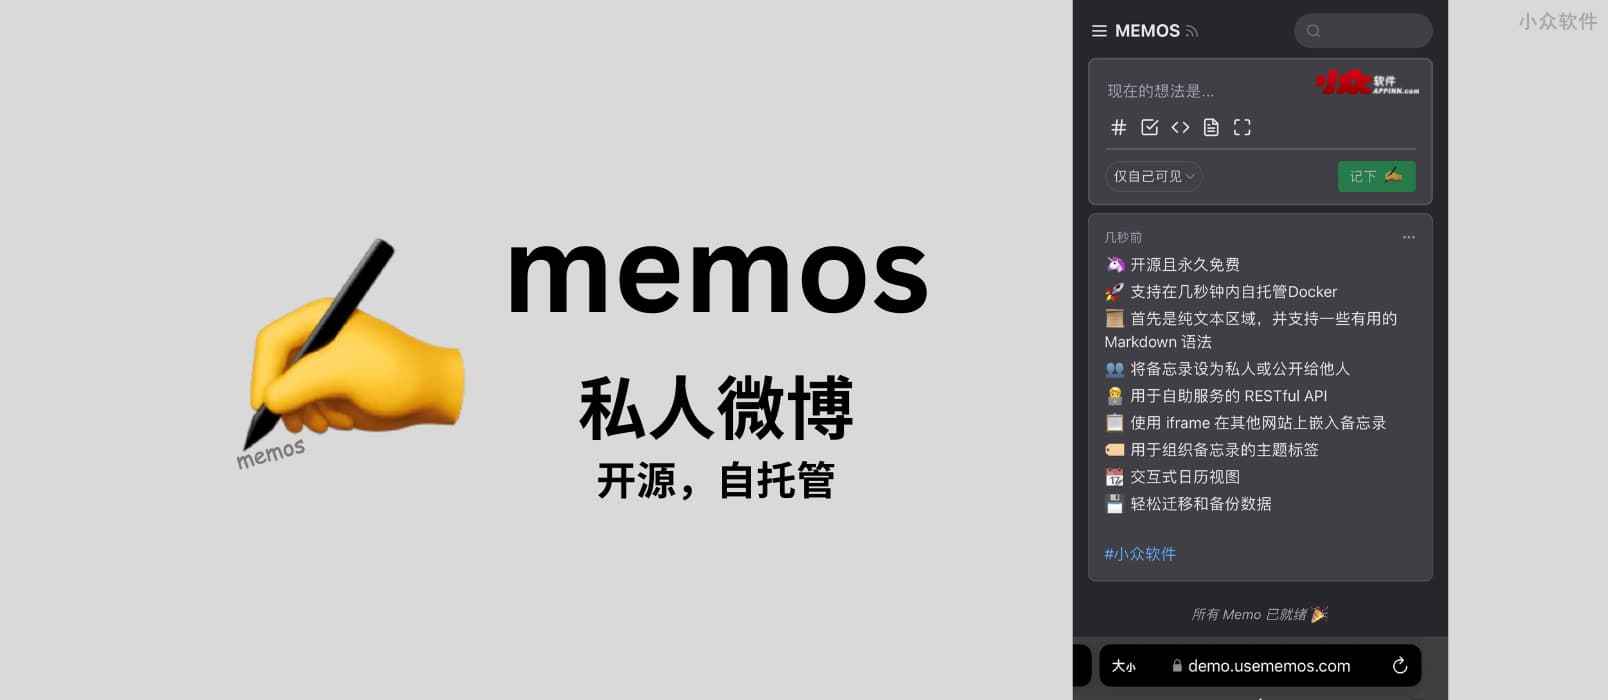 memos - 私人微博，开源可自托管的 flomo 替代